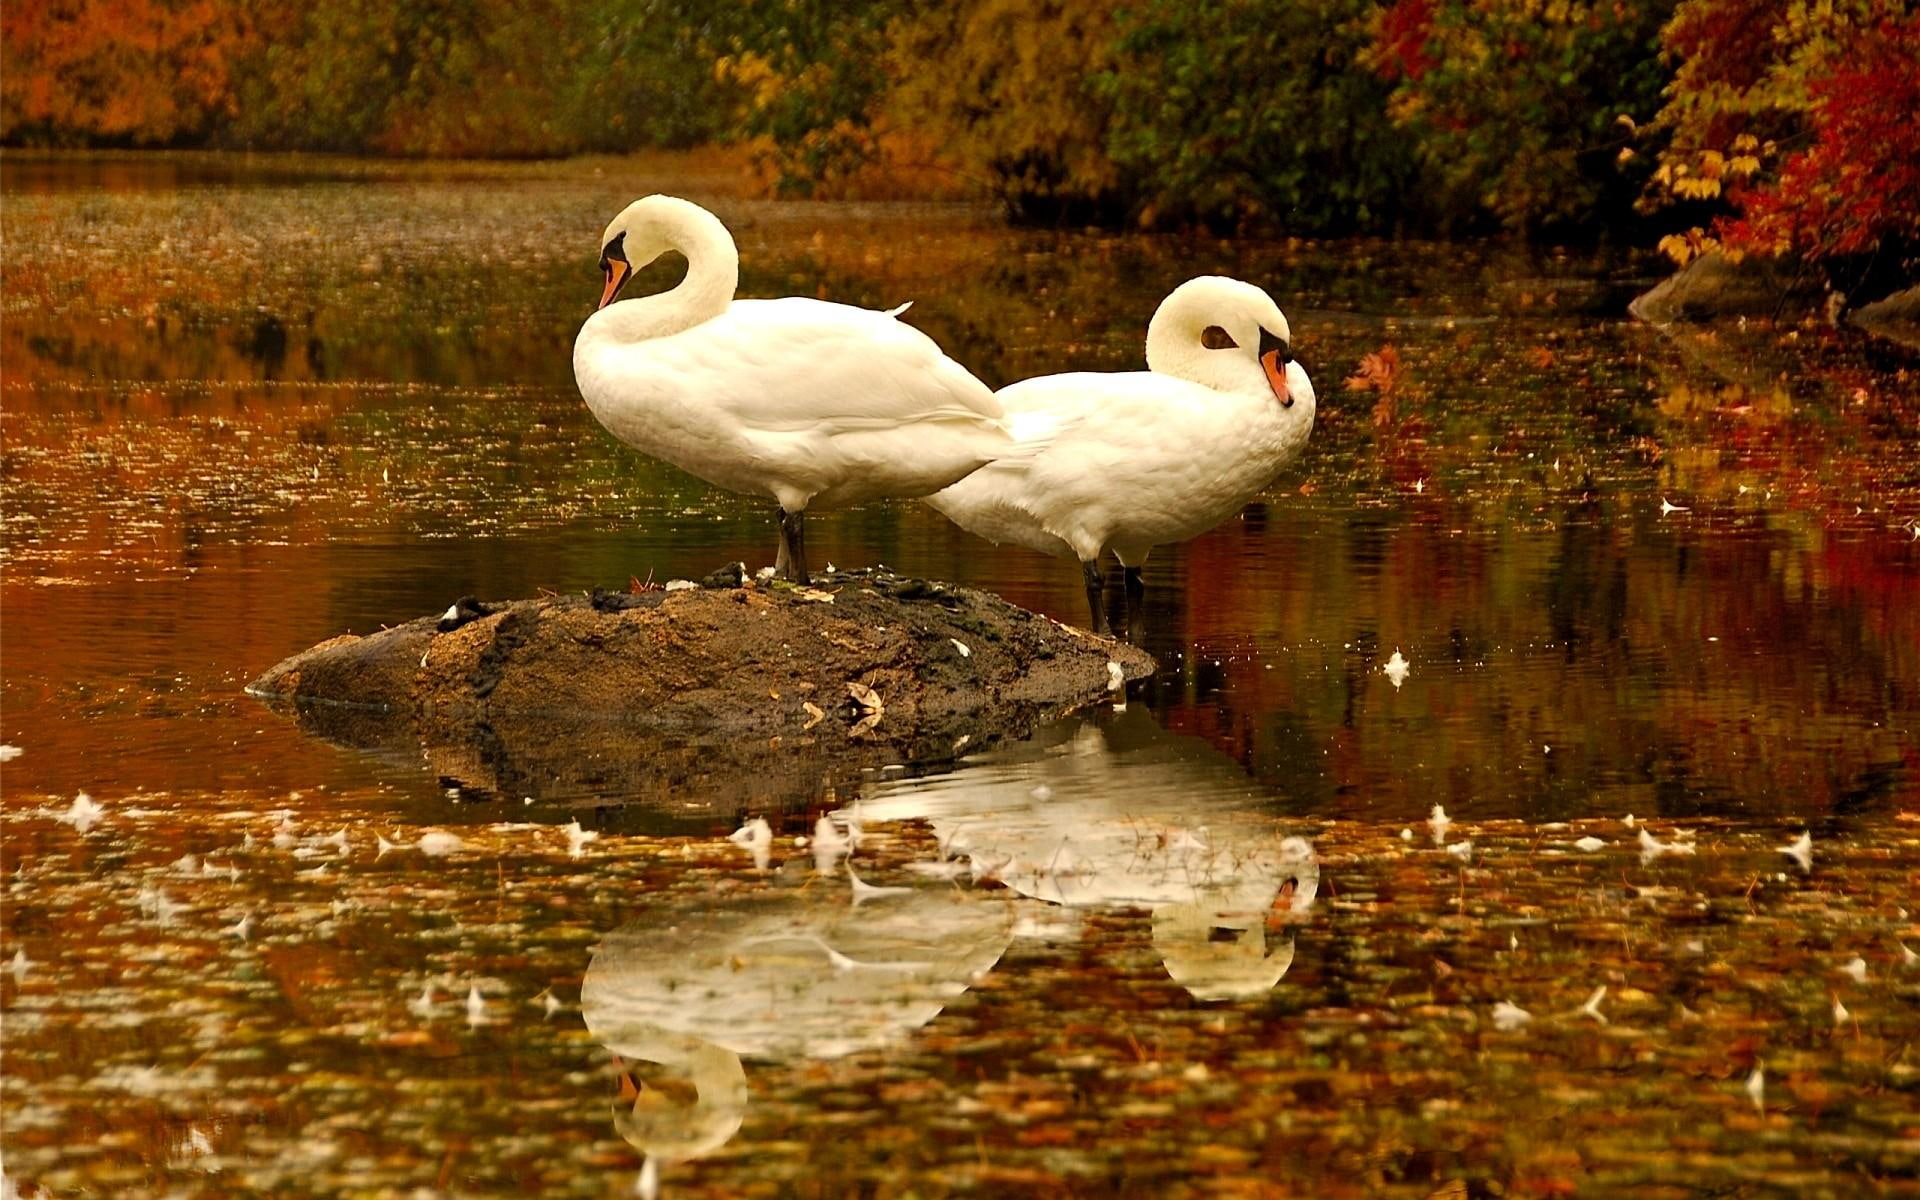 Sleeping Swans, two white swan, lake, autumn, animals